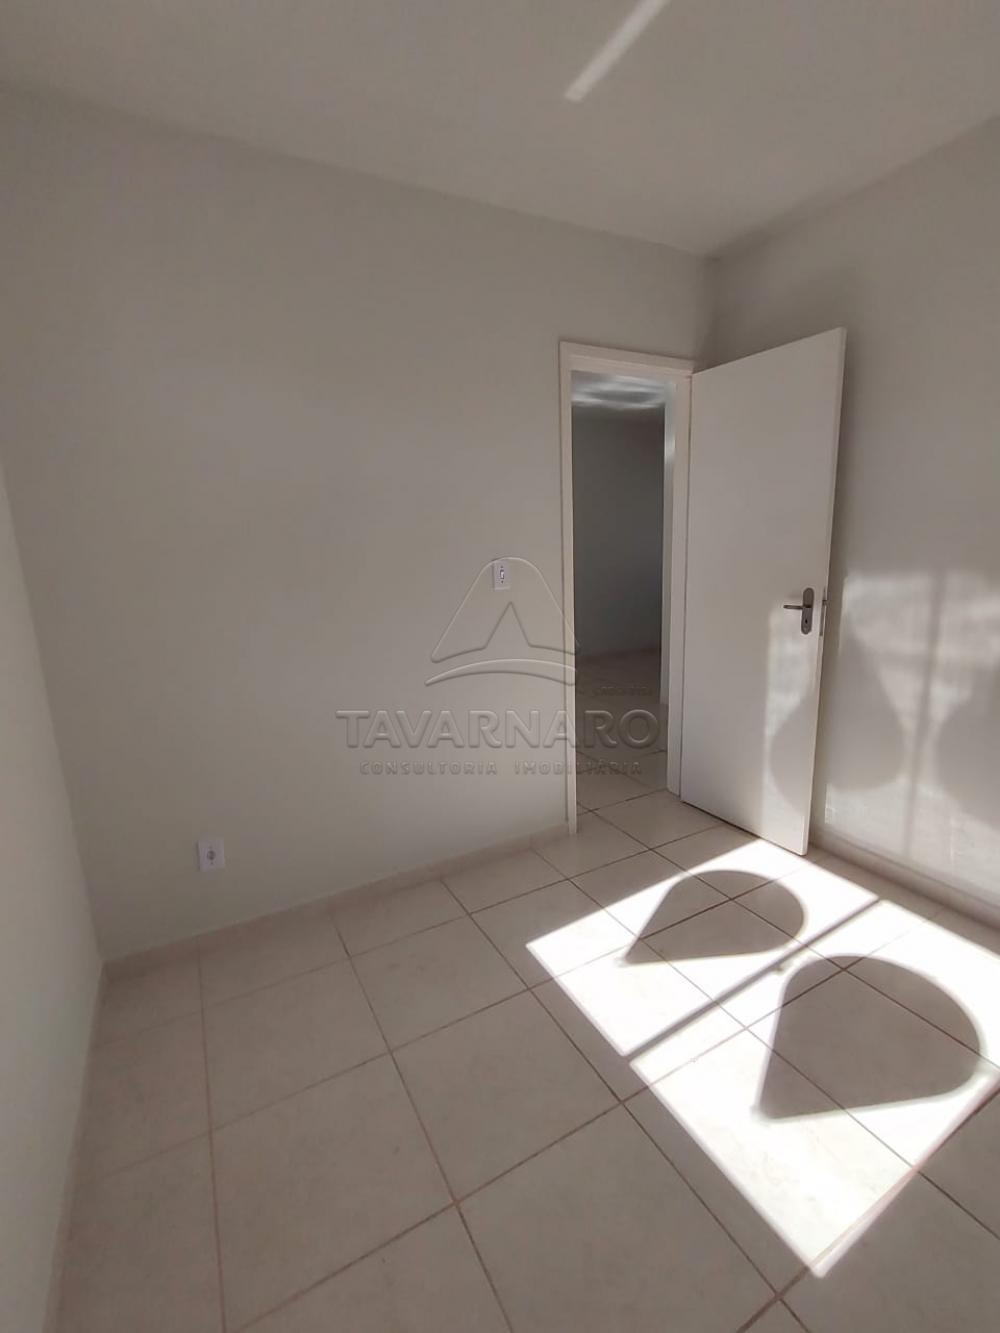 Alugar Casa / Condomínio em Ponta Grossa R$ 490,00 - Foto 11